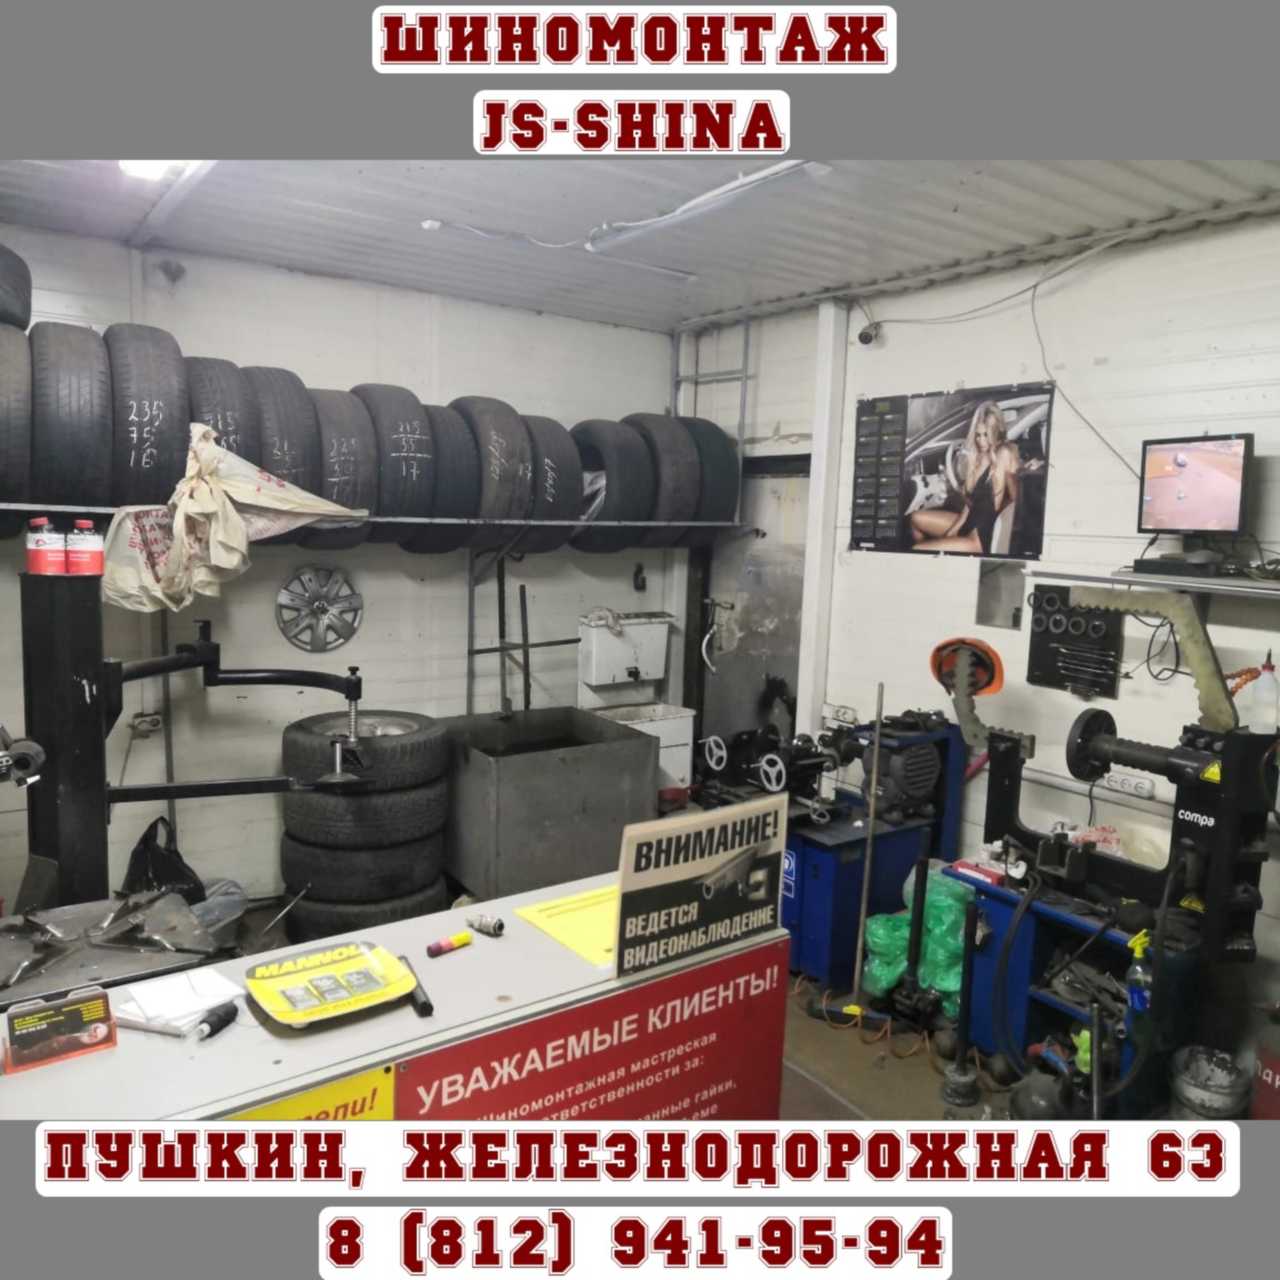 Шиномонтаж 24 часа в Пушкине, ул. Железнодорожная, д. 65 ремонт дисков